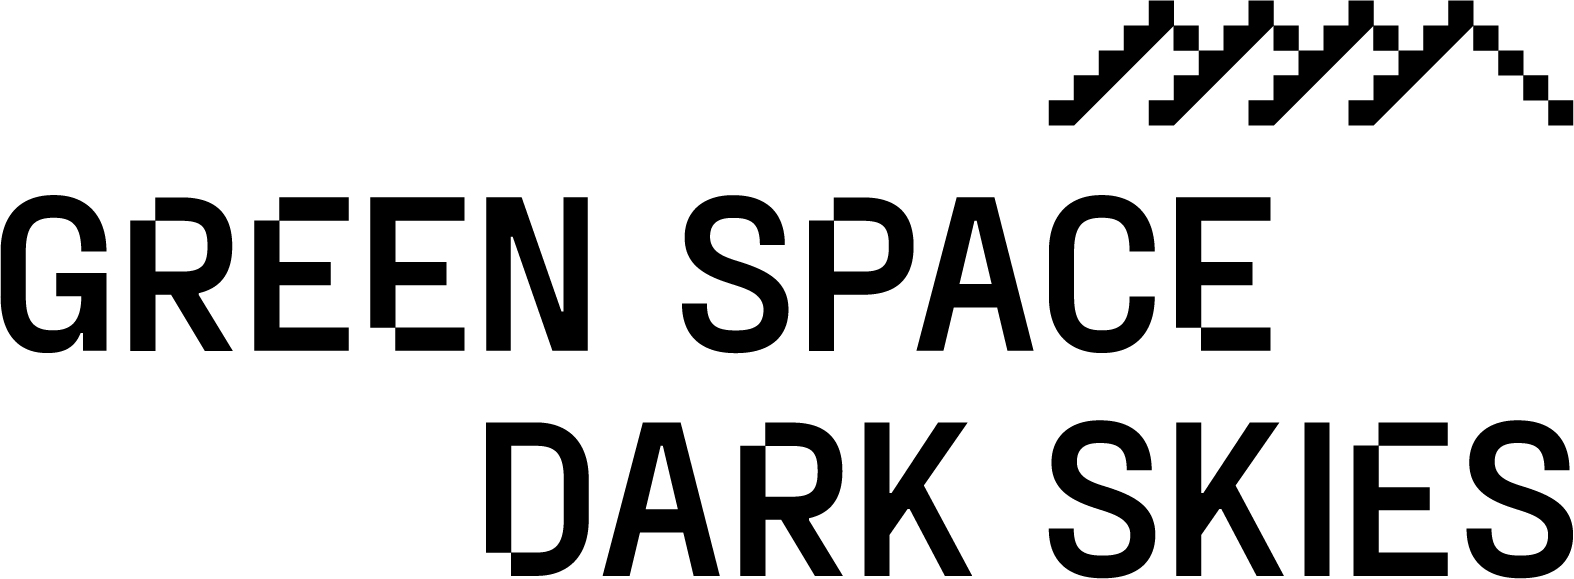 Green Space Dark Skies logo